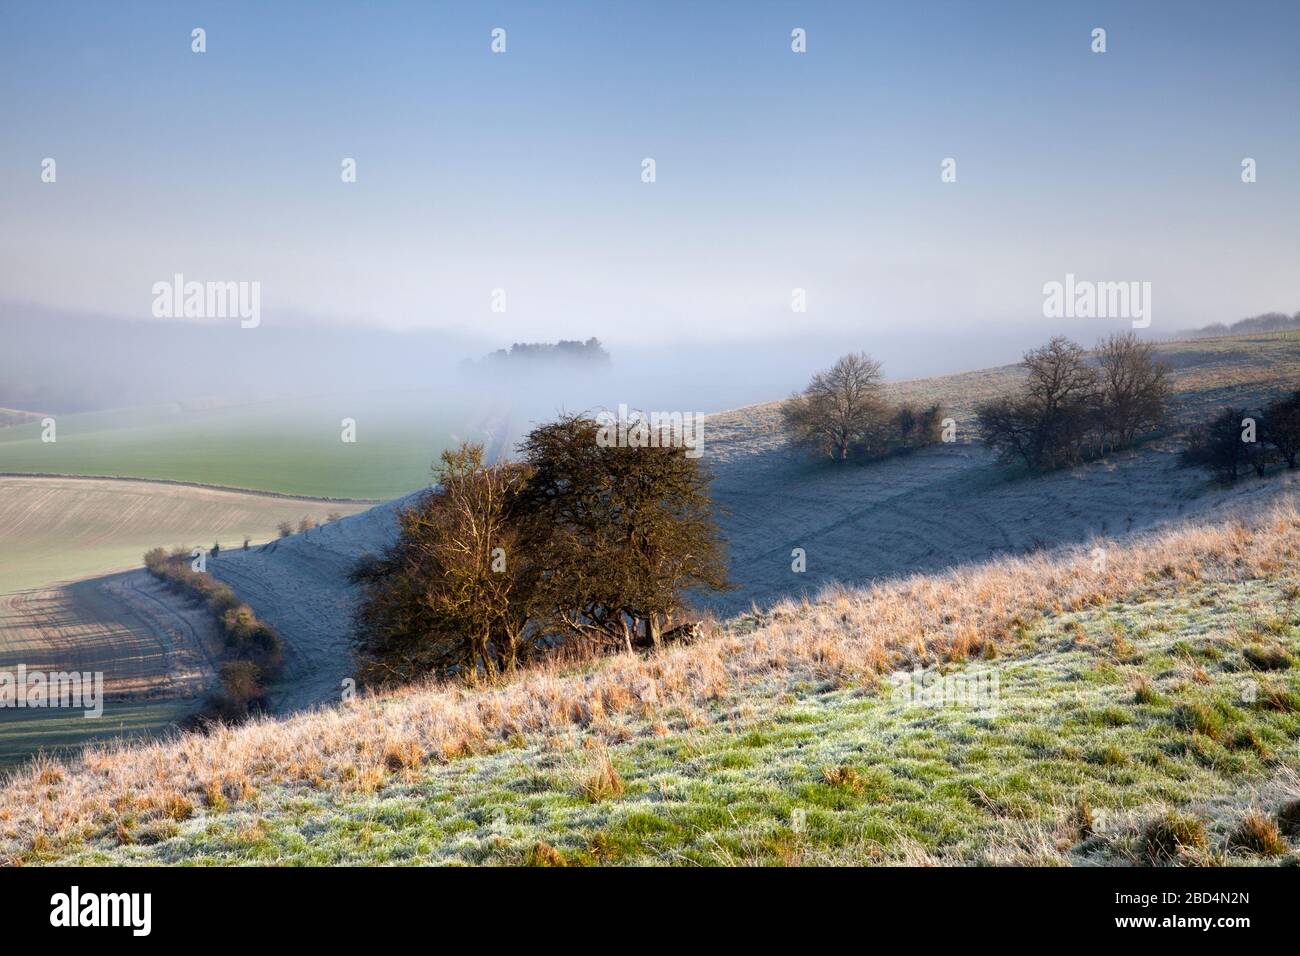 Limpieza de la niebla en la colina de caballo de Knower, cerca del pueblo de Knower en Wiltshire. Foto de stock